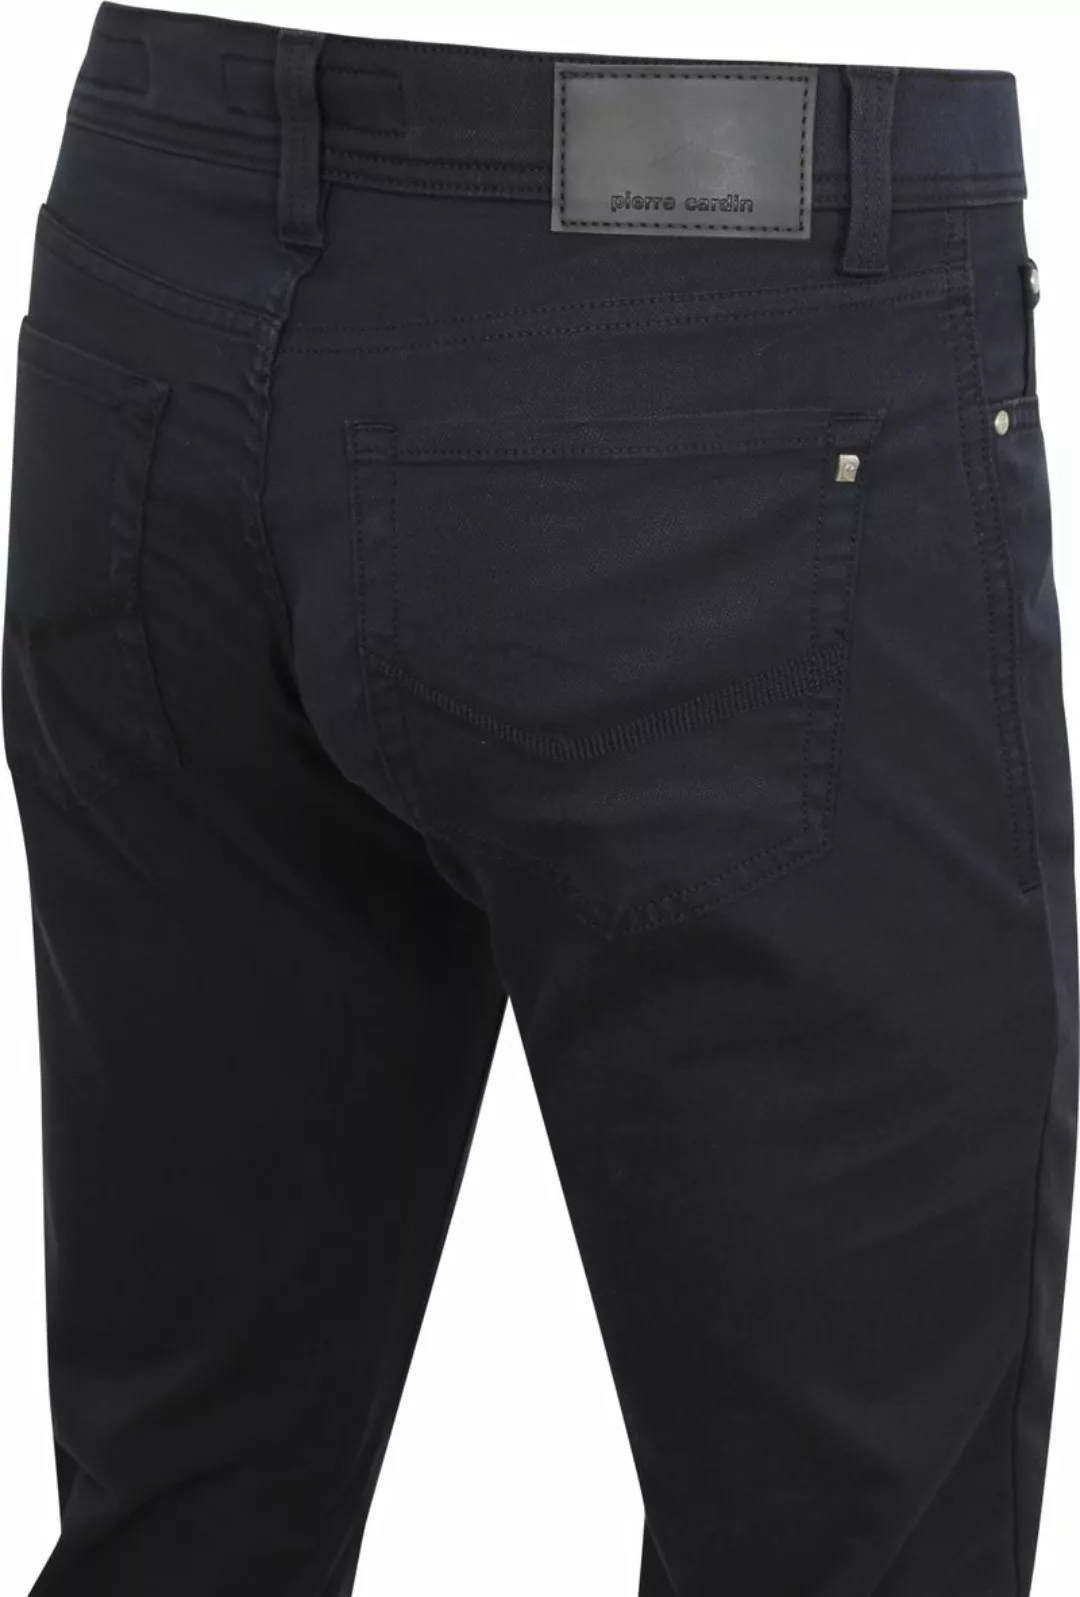 Pierre Cardin Jeans Zukunft Flex Anthrazit - Größe W 35 - L 32 günstig online kaufen